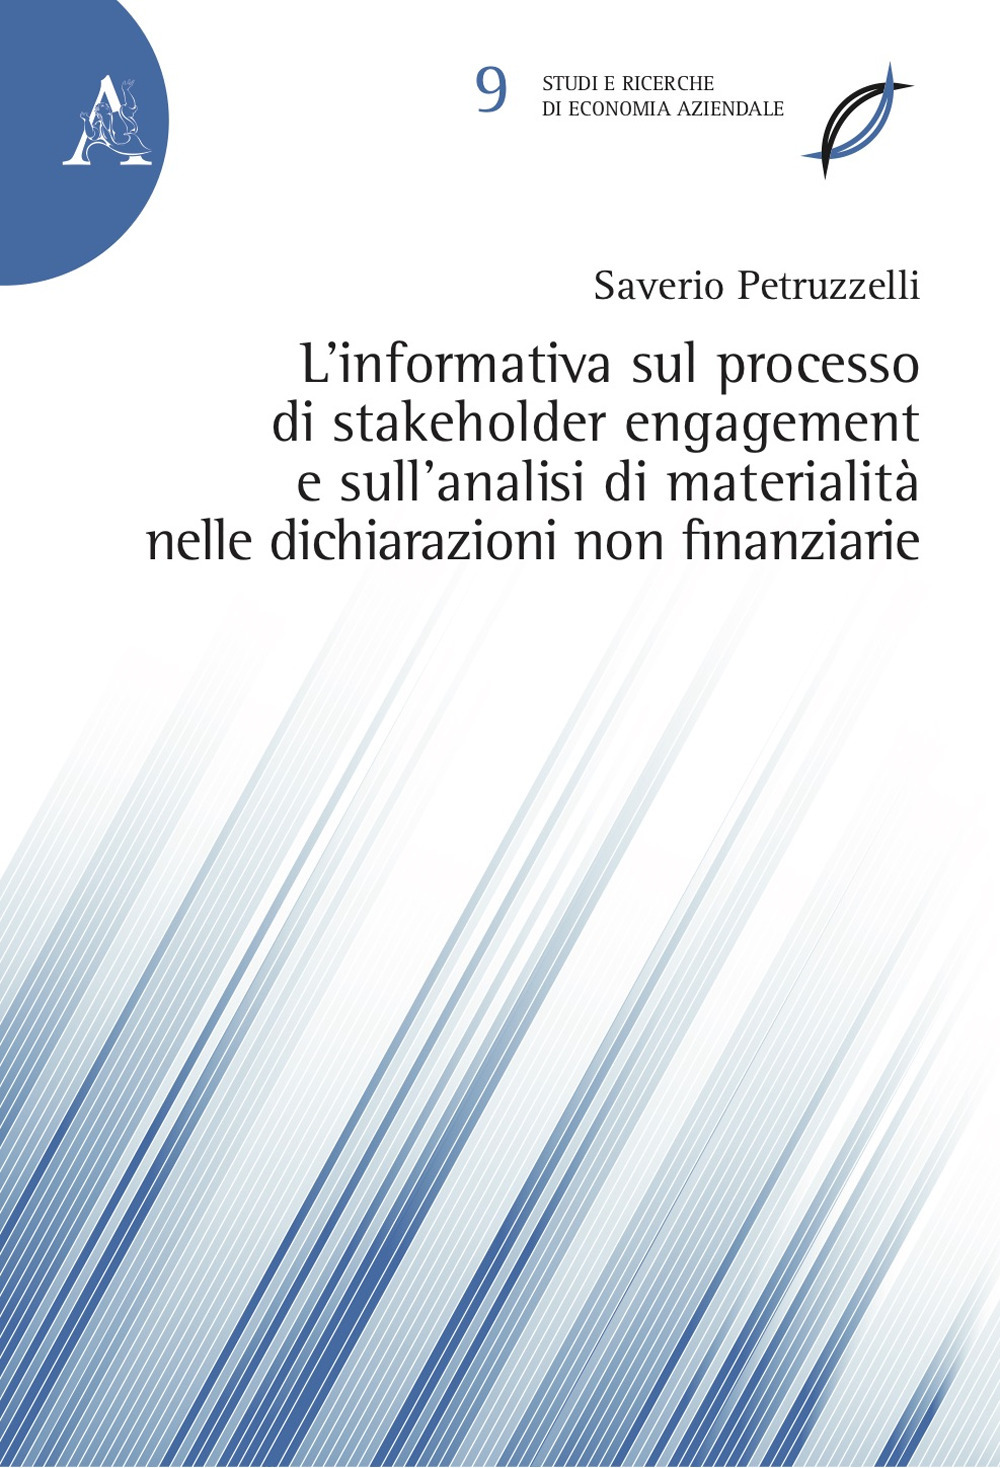 L'informativa sul processo di stakeholder engagement e sull'analisi di materialità nelle dichiarazioni non finanziarie